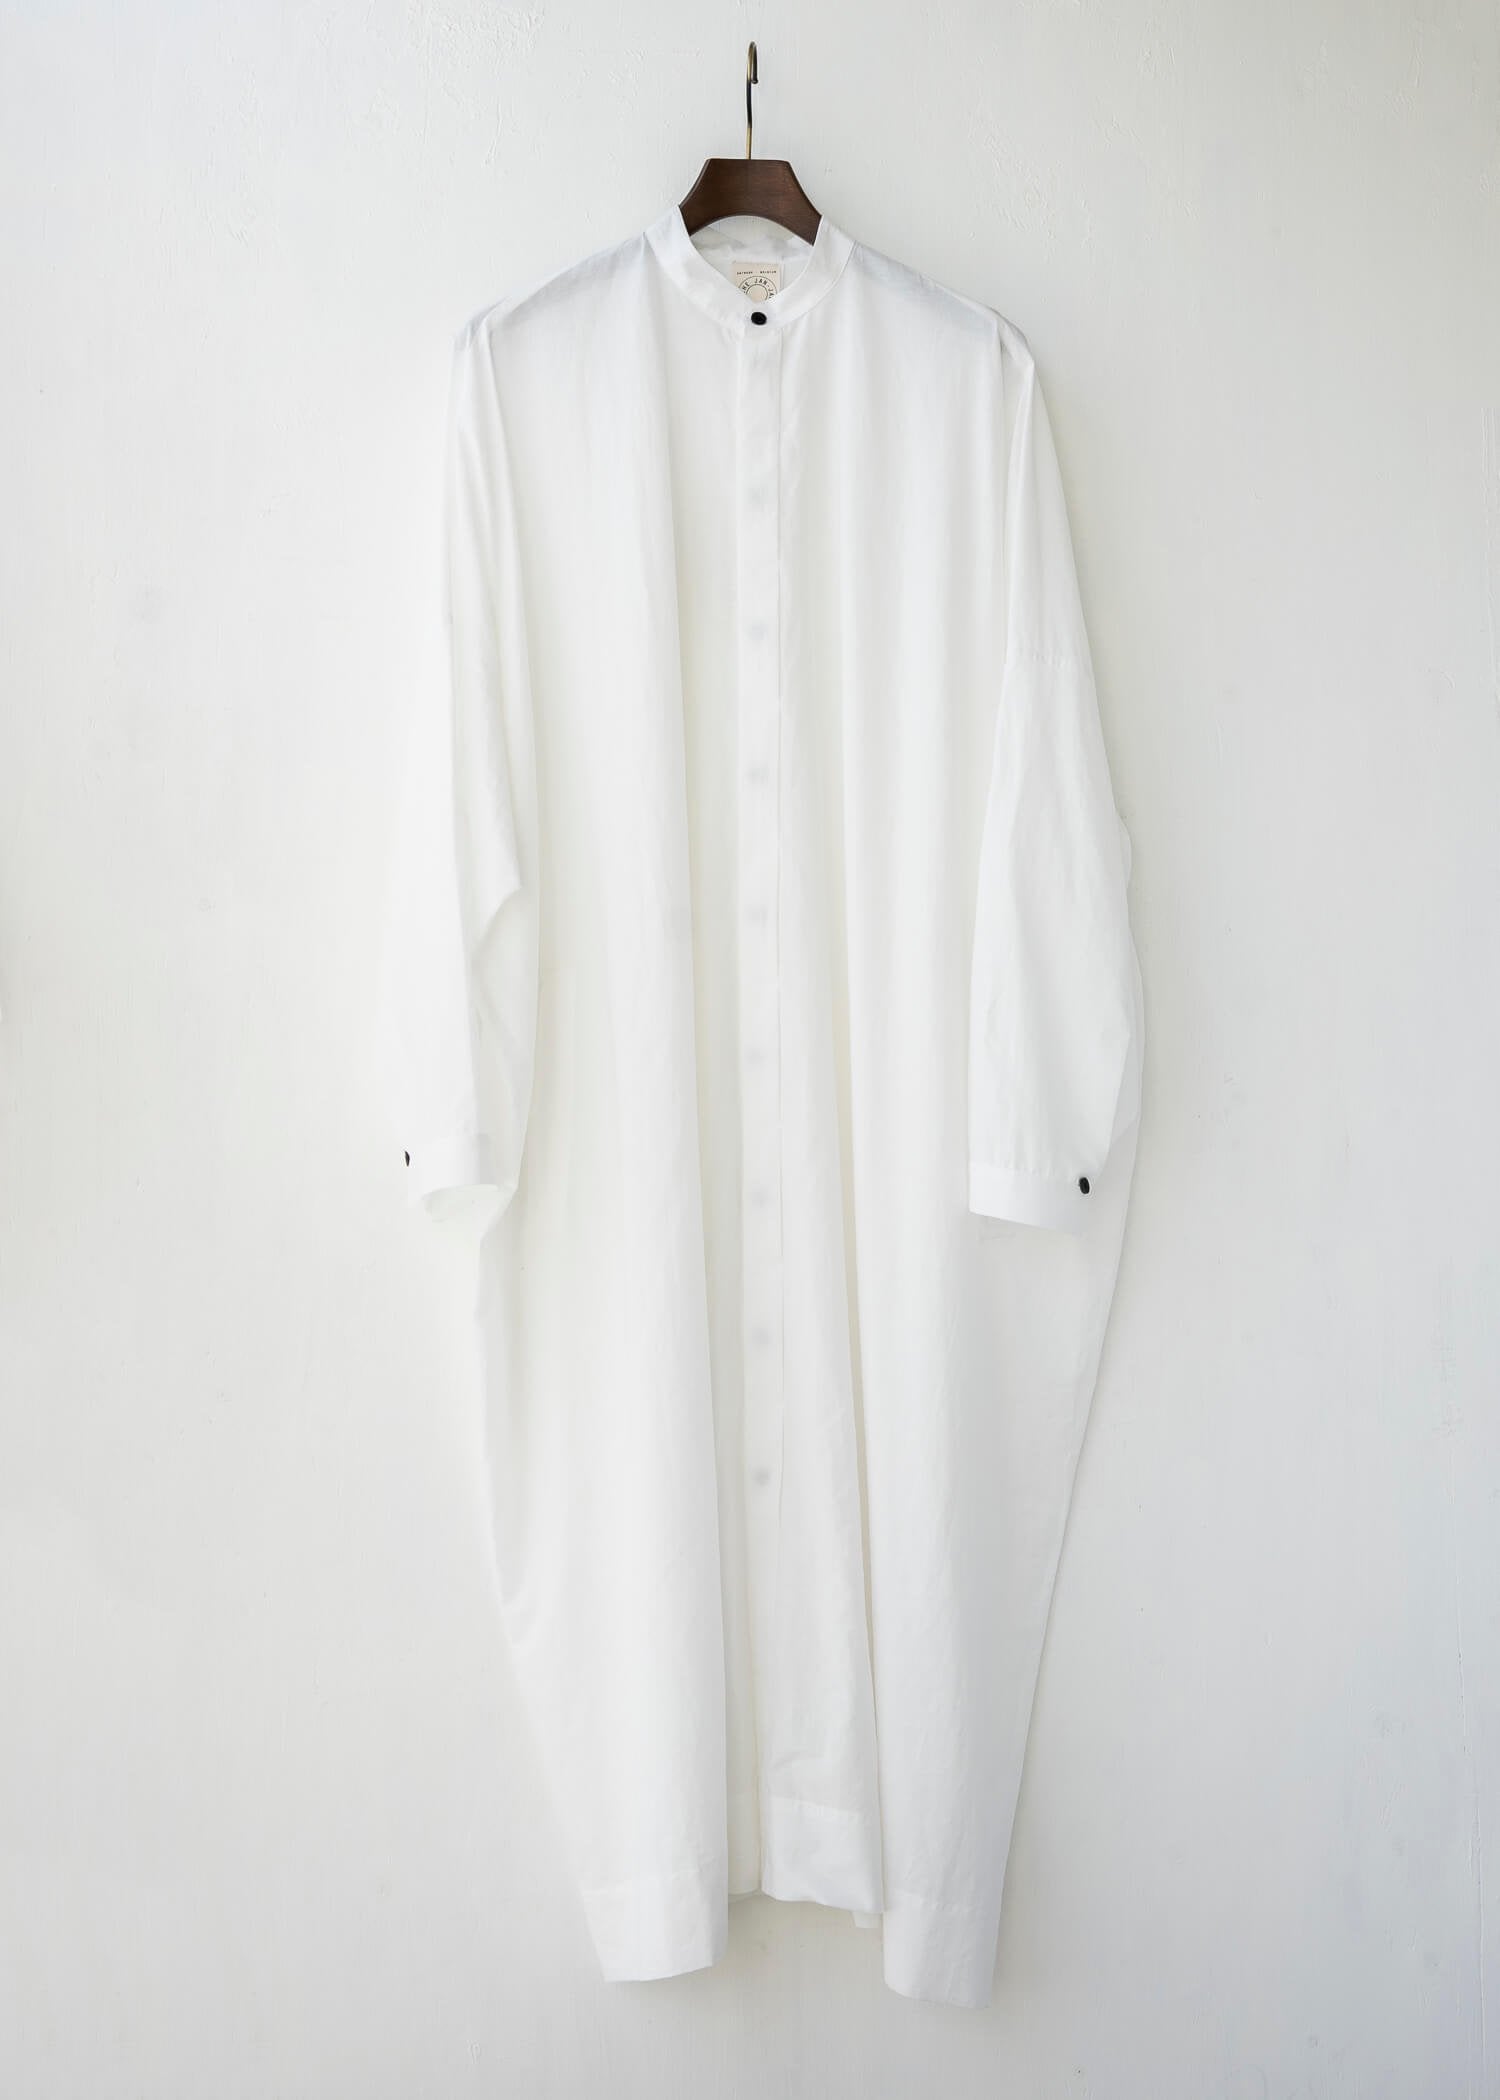 JAN-JAN VAN ESSCHE / "SHIRT#78" 宽松长衬衫 / OFF-WHITE CO / LI TYPEWRITTER